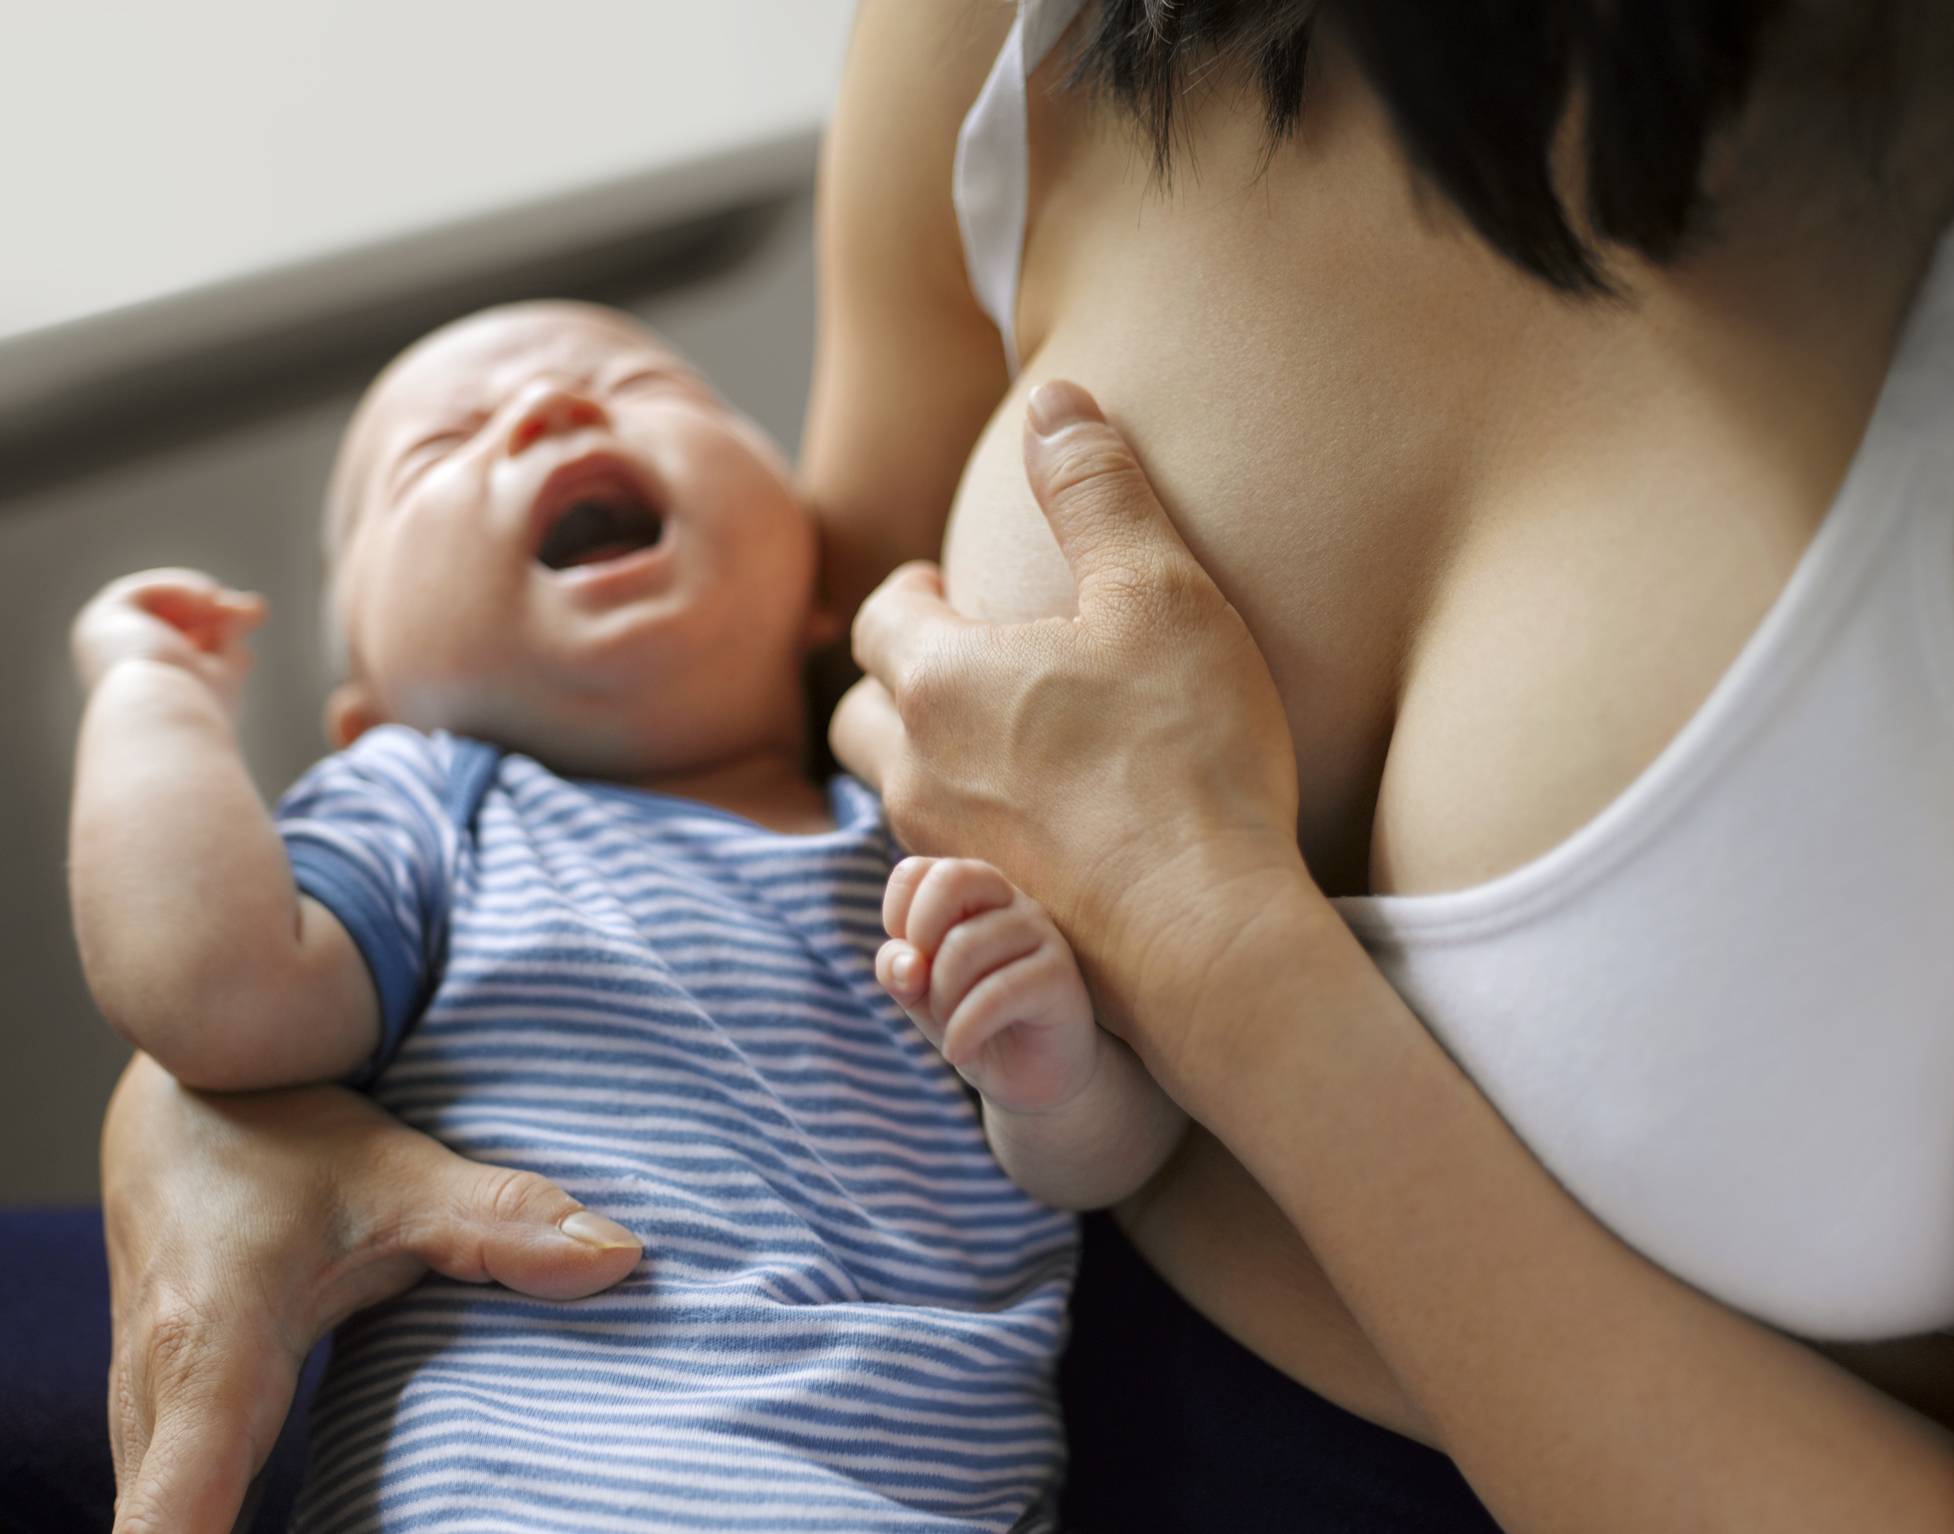 Ребёнок постоянно требует материнскую грудь. причины и способы решения проблемы